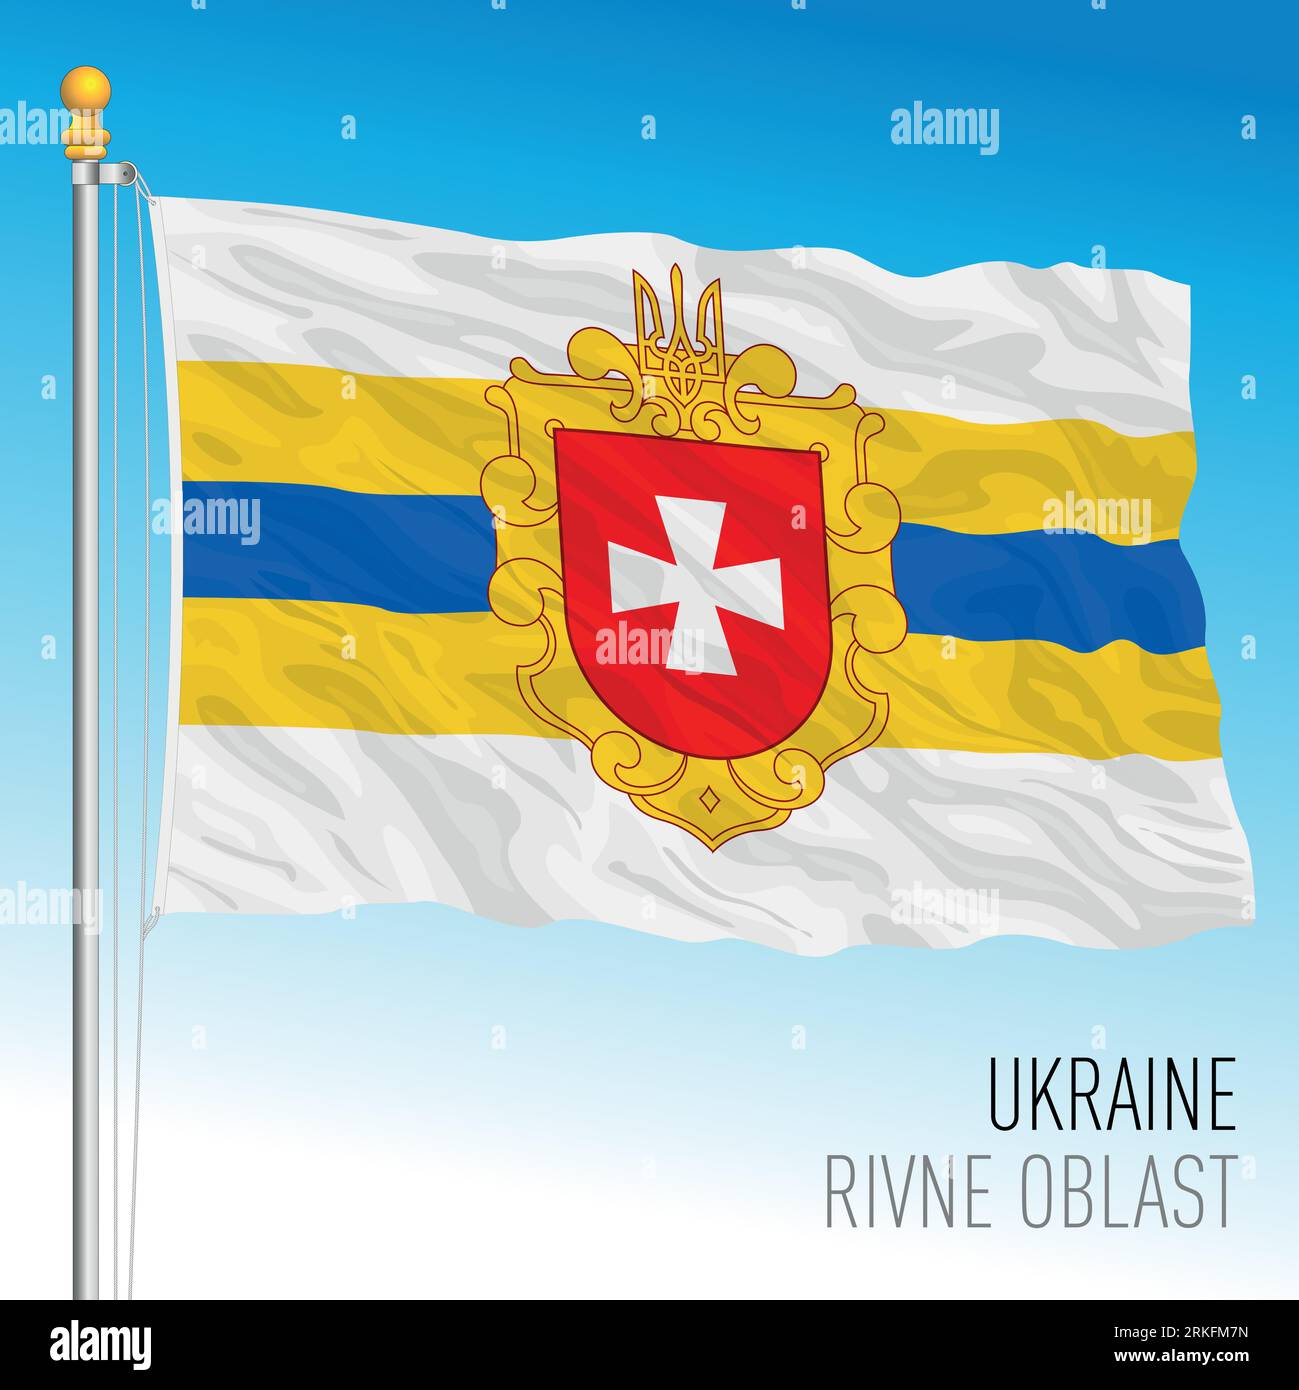 Ukraine, Rivne Oblast waving flag, europe, vector illustration Stock Vector